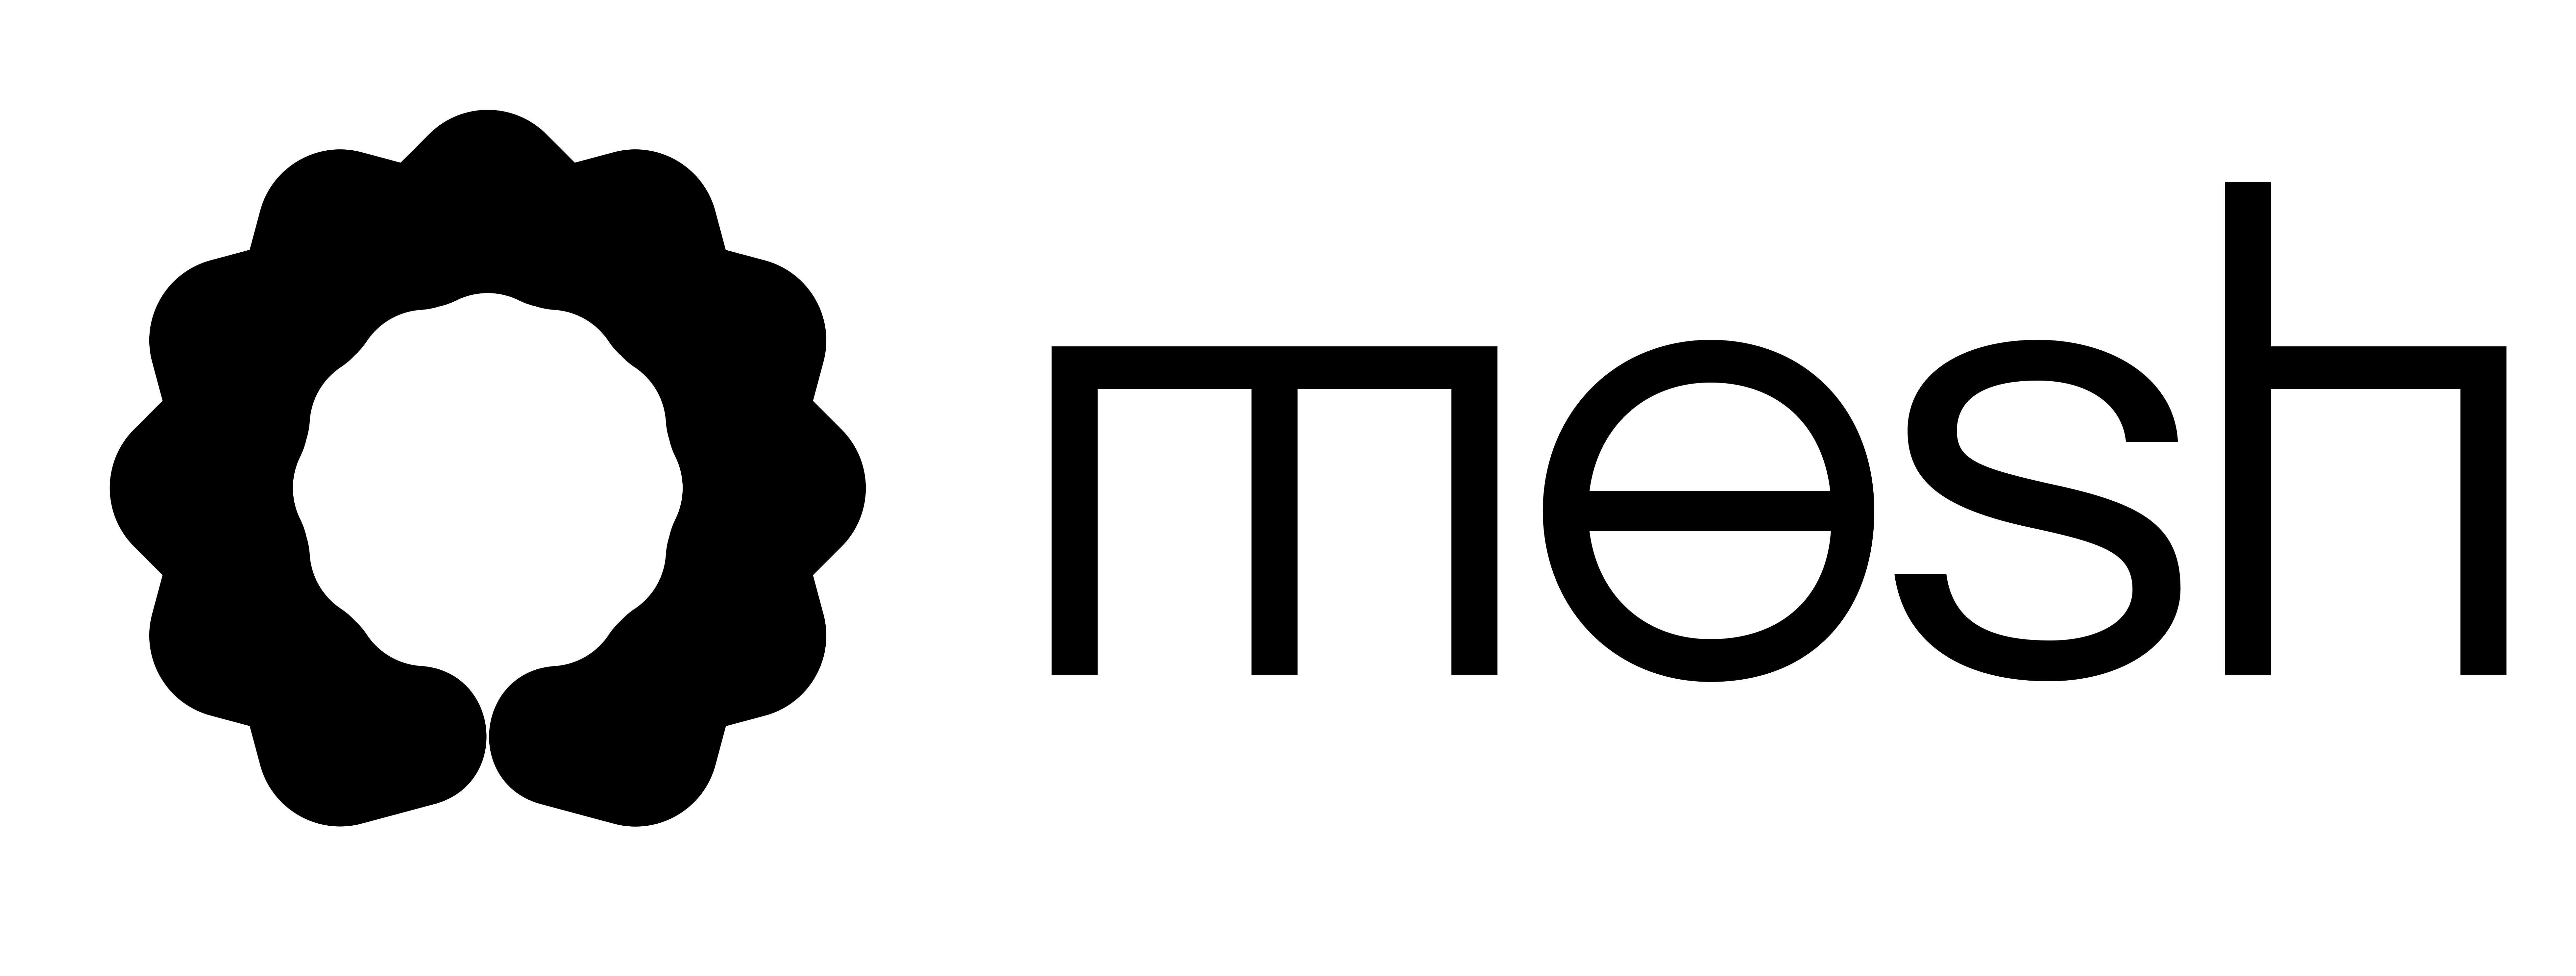 Mesh Logo for Light Mode